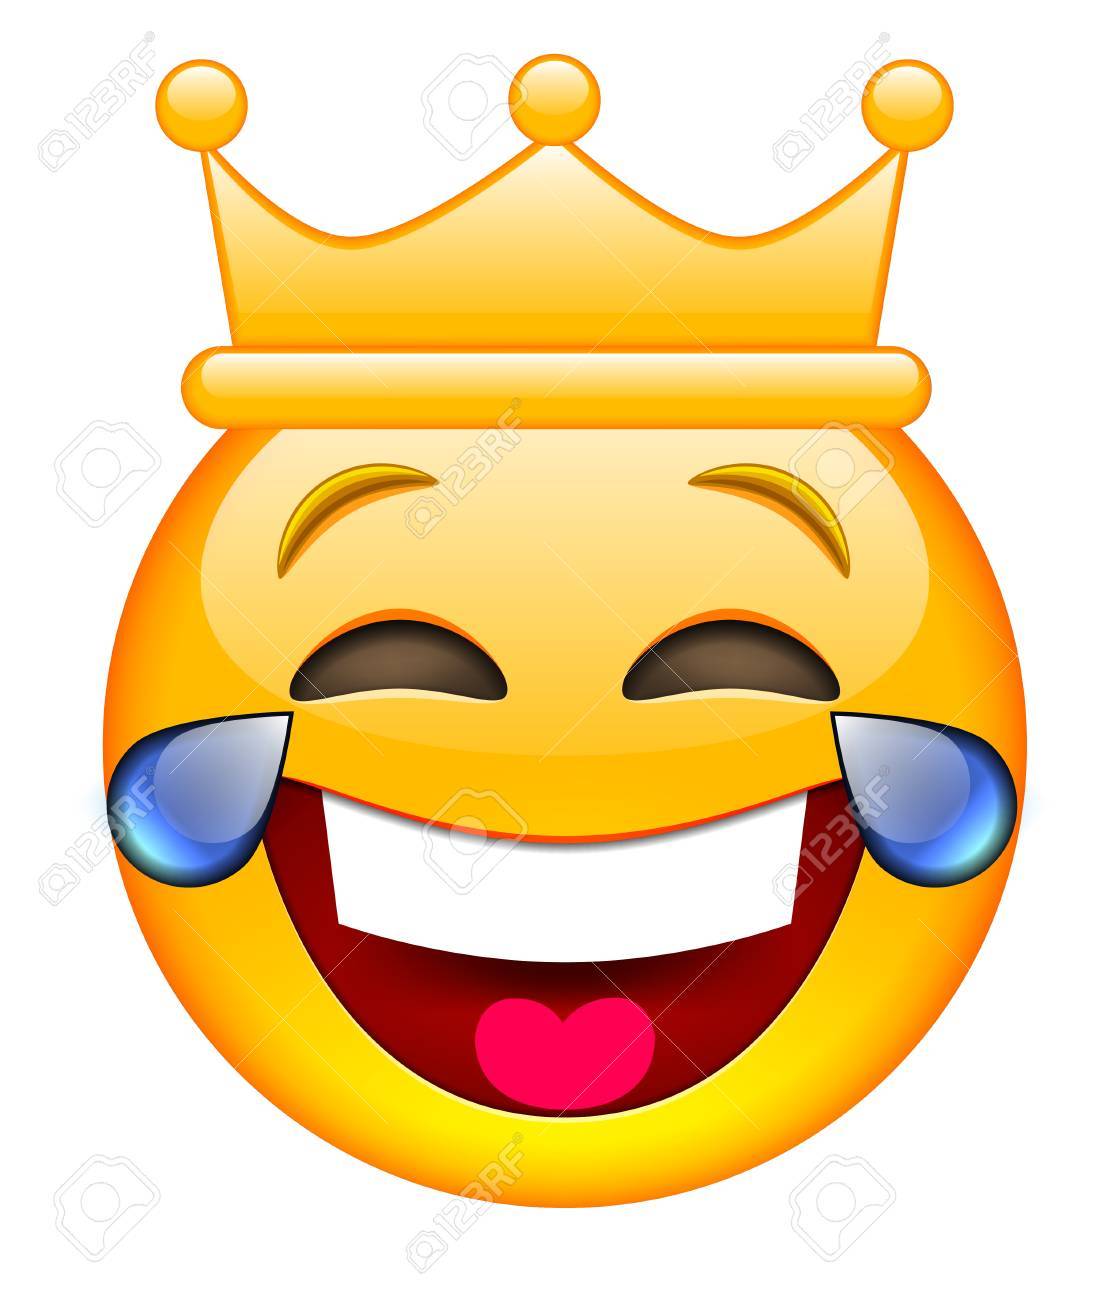 laughing emoji Laughing smiley face emoticon free download jpg